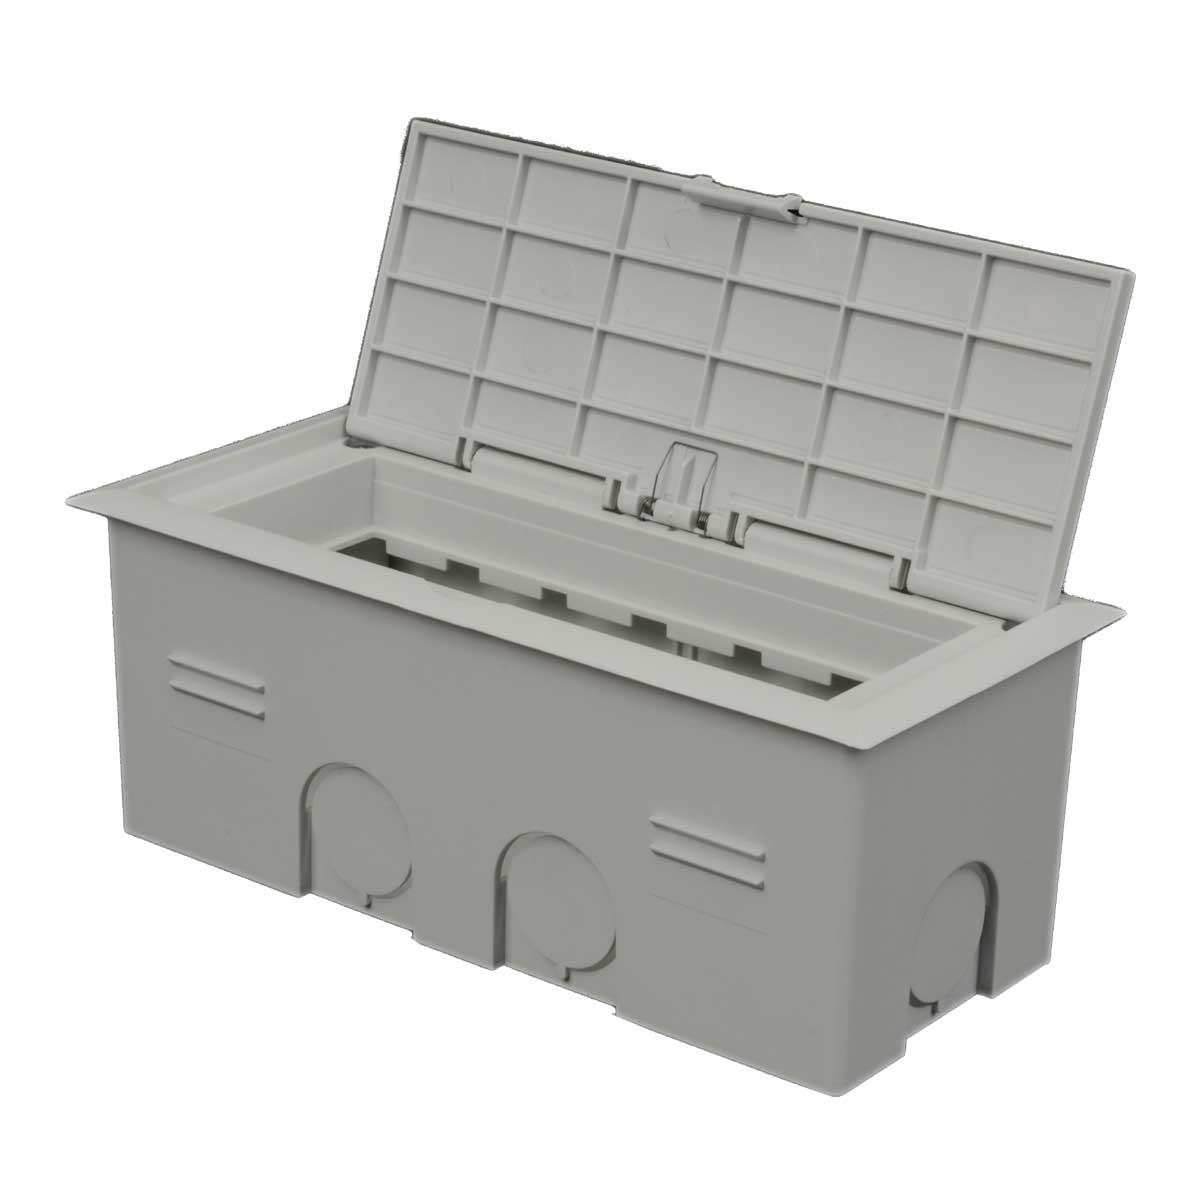 Коробка для приладів в штукатурку (світло-сірого кольору)KOPOBOX MINI 